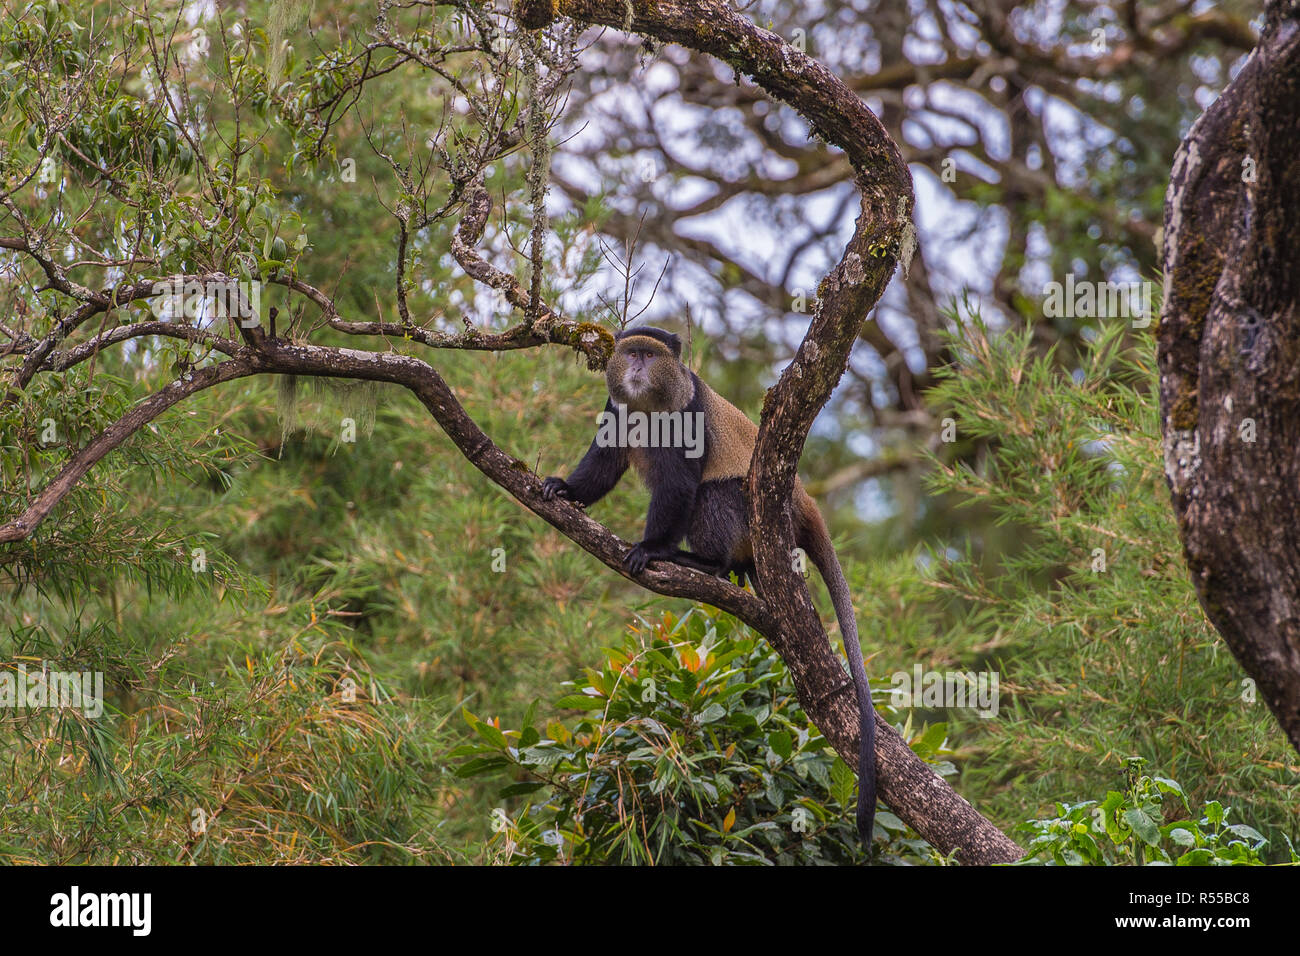 Golden Monkey, montagnes volcaniques Virunga, l'Afrique Centrale Banque D'Images